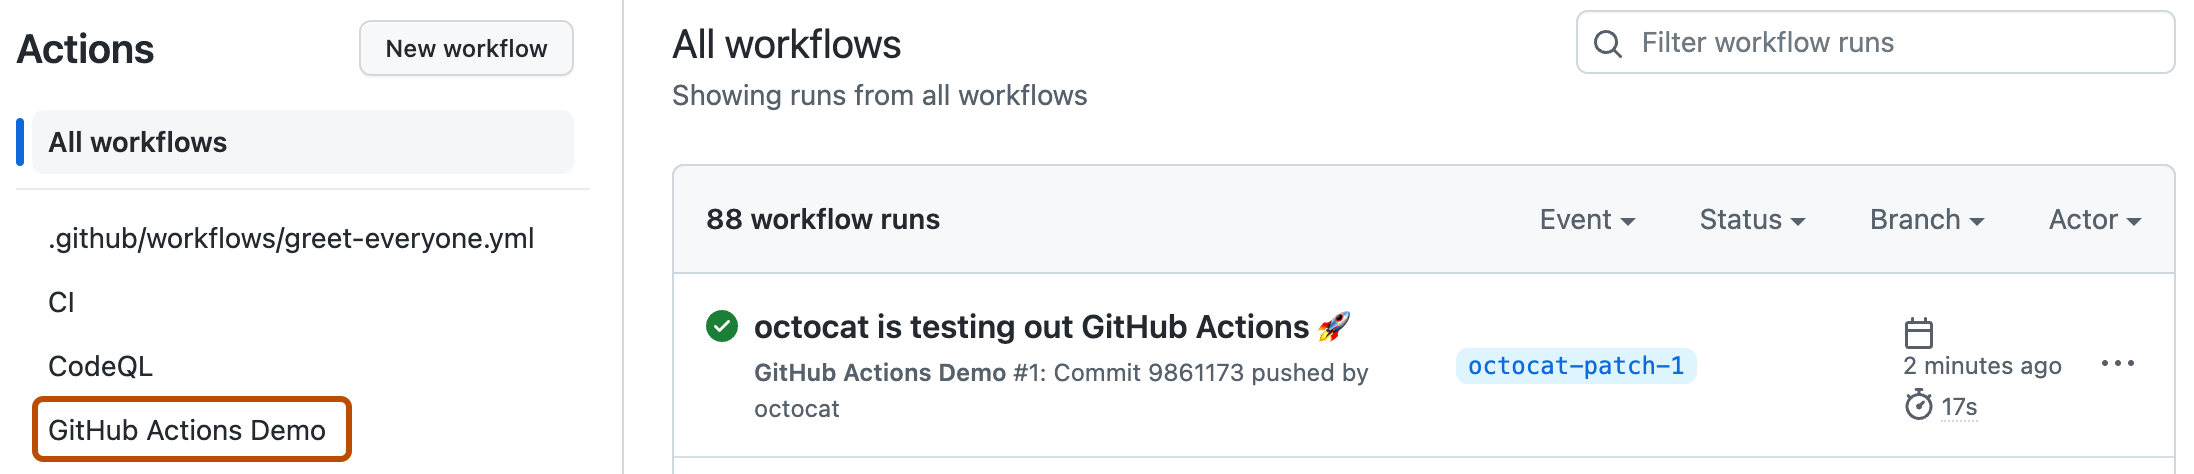 Снимок экрана: страница "Действия". Имя примера рабочего процесса "GitHub Actions Demo" выделено темно-оранжевым контуром.